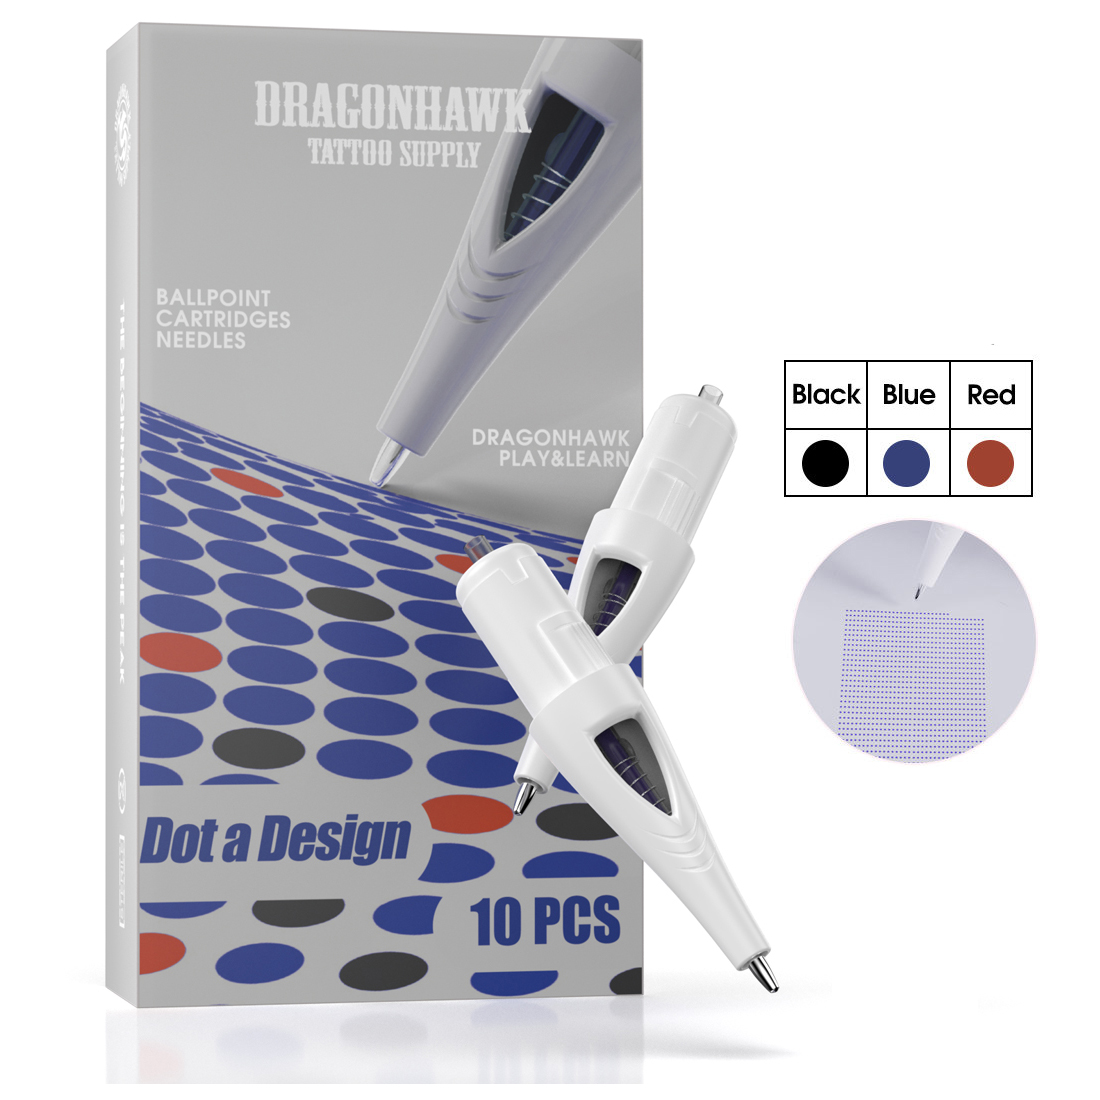 Dragonhawk Ballpoint Cartridge aiguilles pour le tatouage débutant pratique Toll multicolor dotwork yz-mix